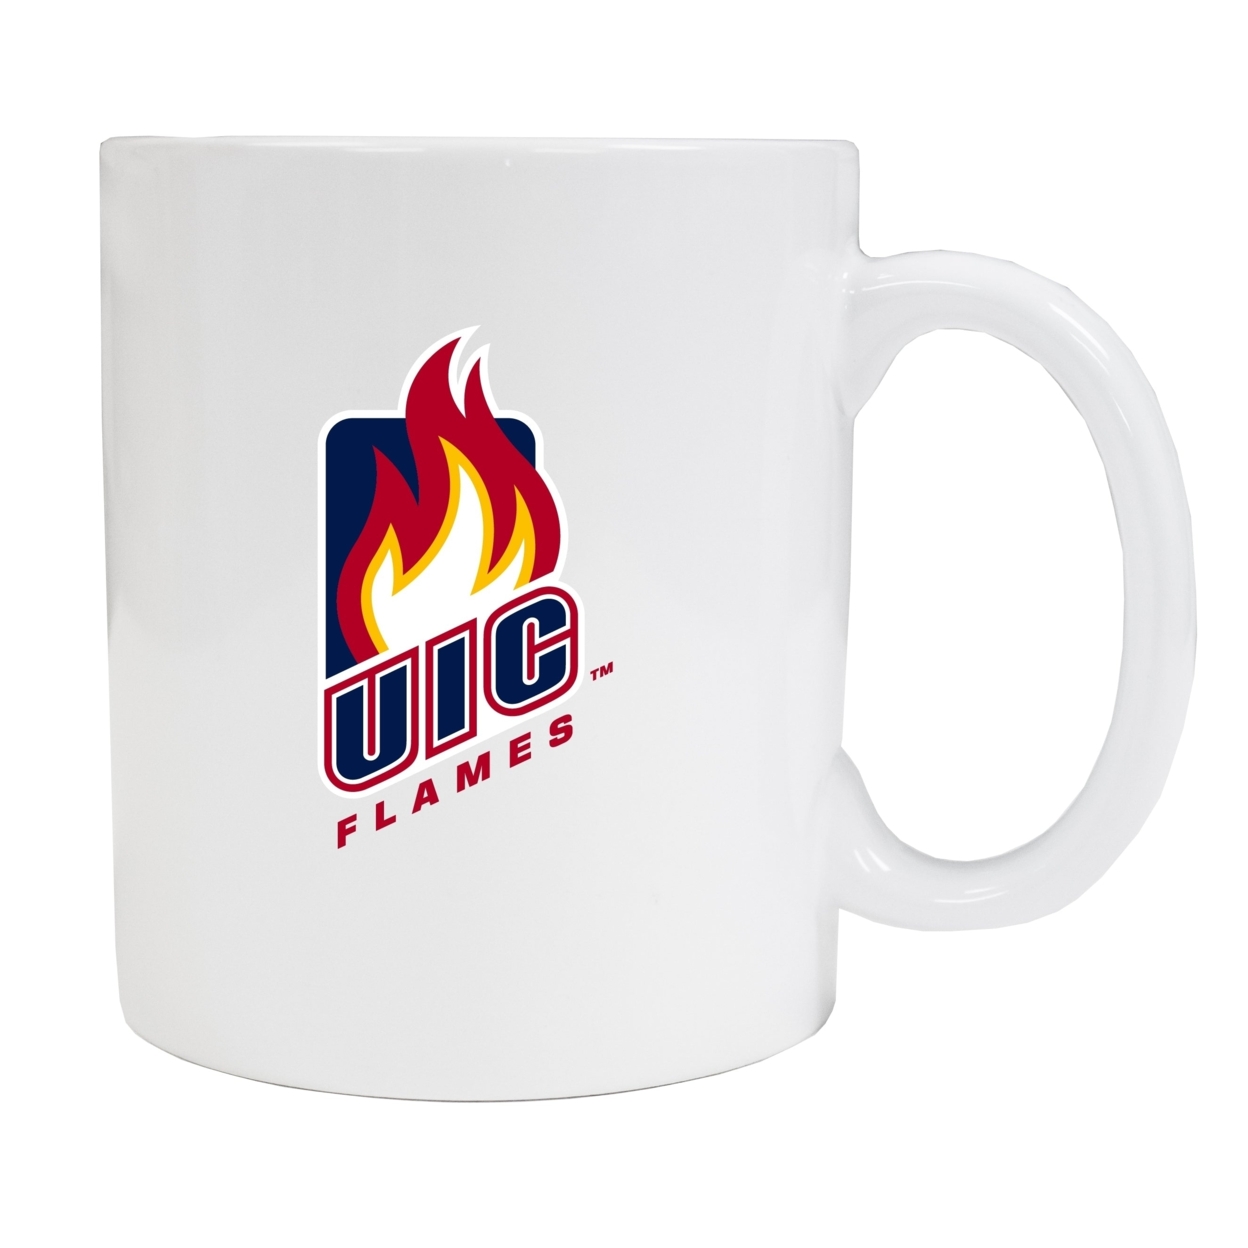 University Of Illinois At Chicago White Ceramic Mug (White).